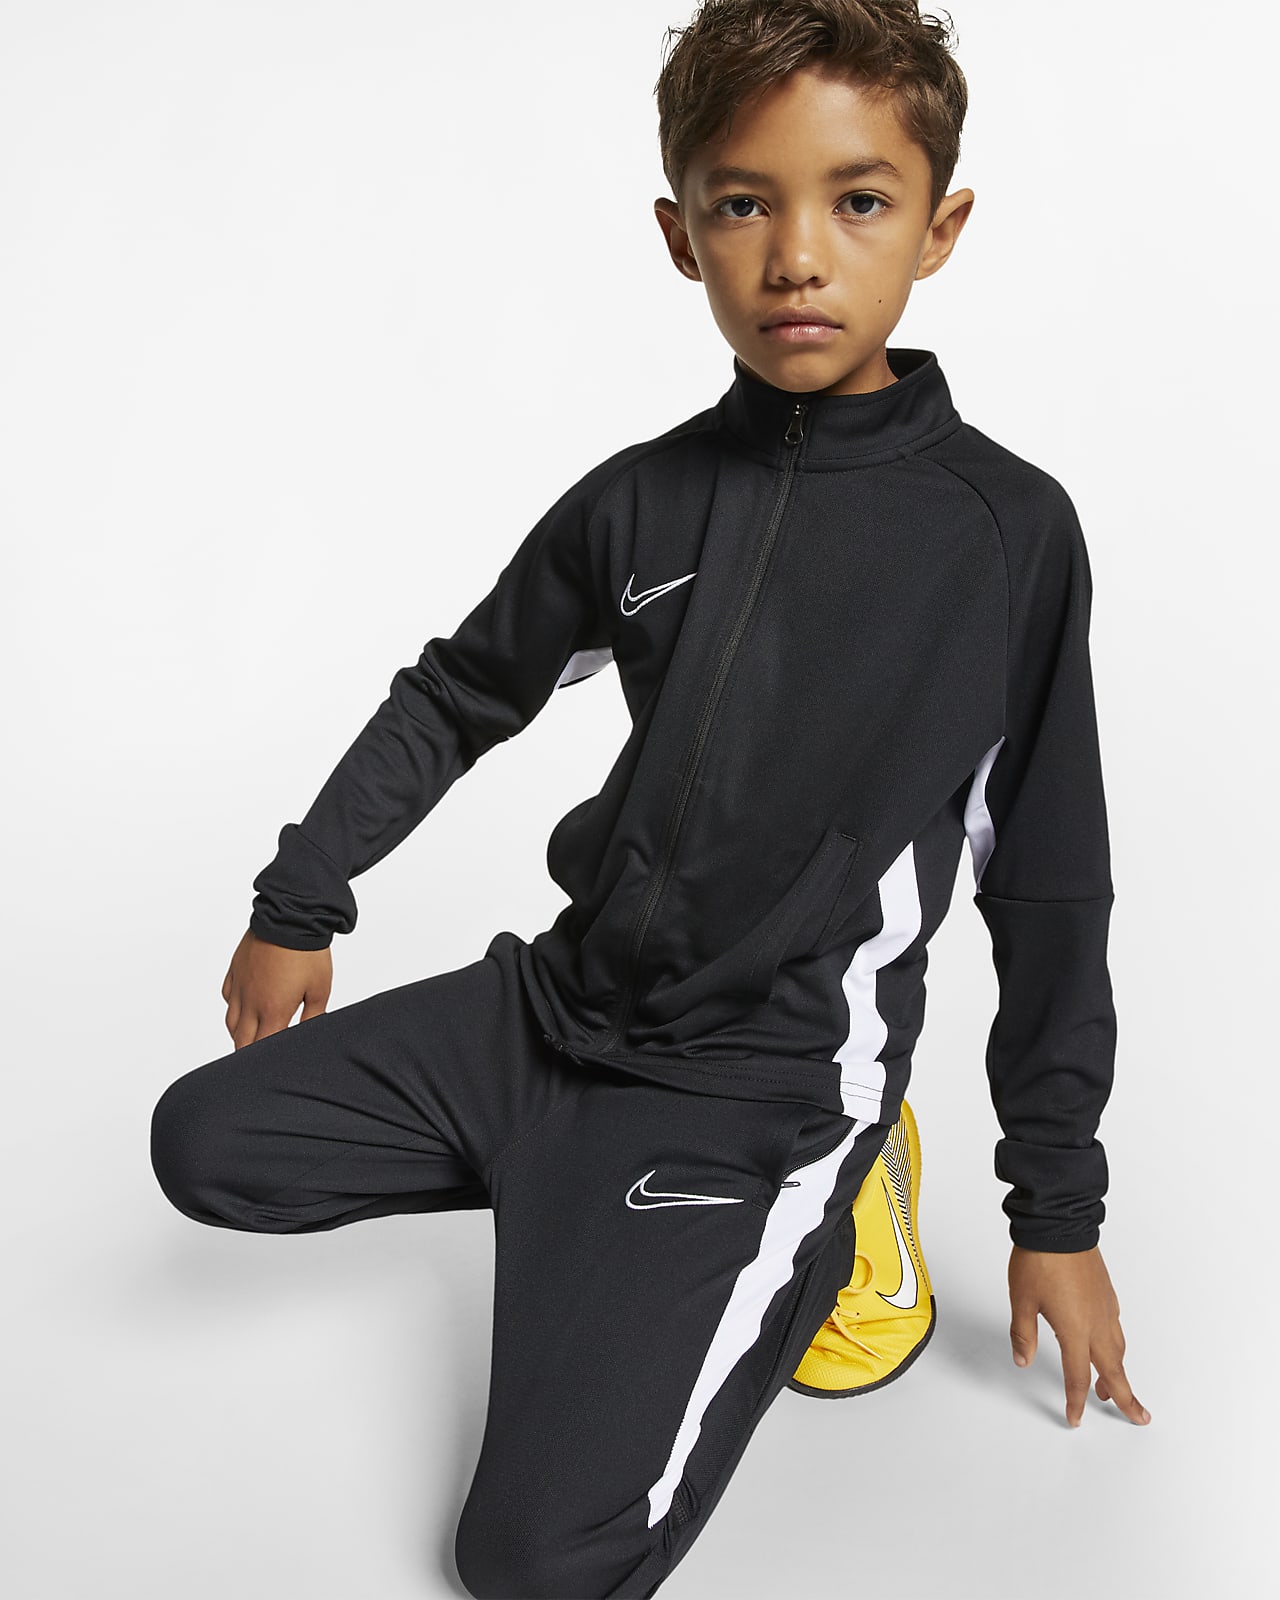 Nike公式 ナイキ Dri Fit アカデミー ジュニア サッカートラックスーツ オンラインストア 通販サイト